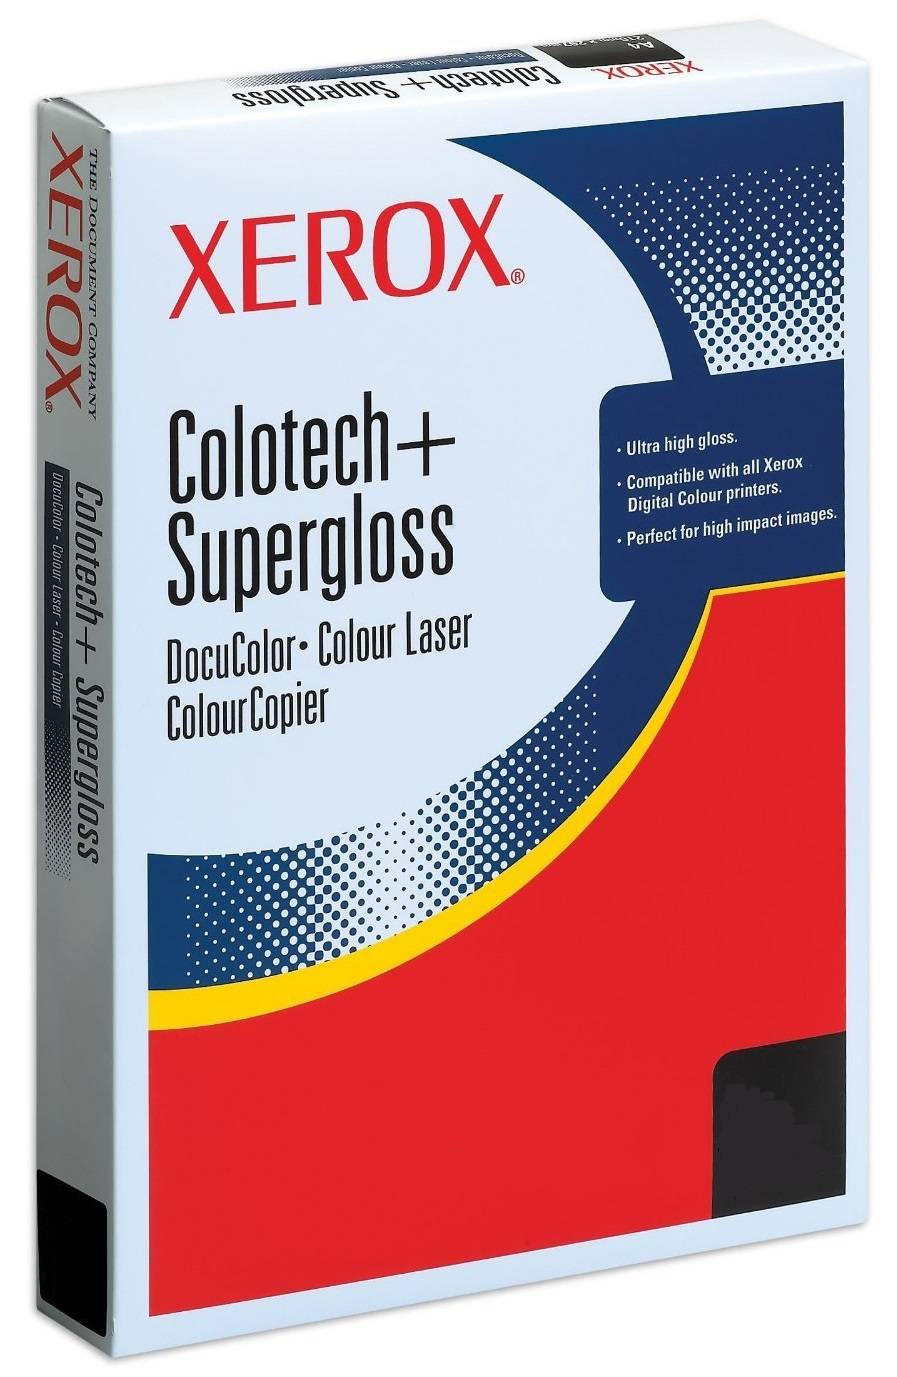 Бумага XEROX Colotech Plus без покрытия 170CIE, 100г, SRA3 (450×320мм), 500 листов. Грузить кратно 3